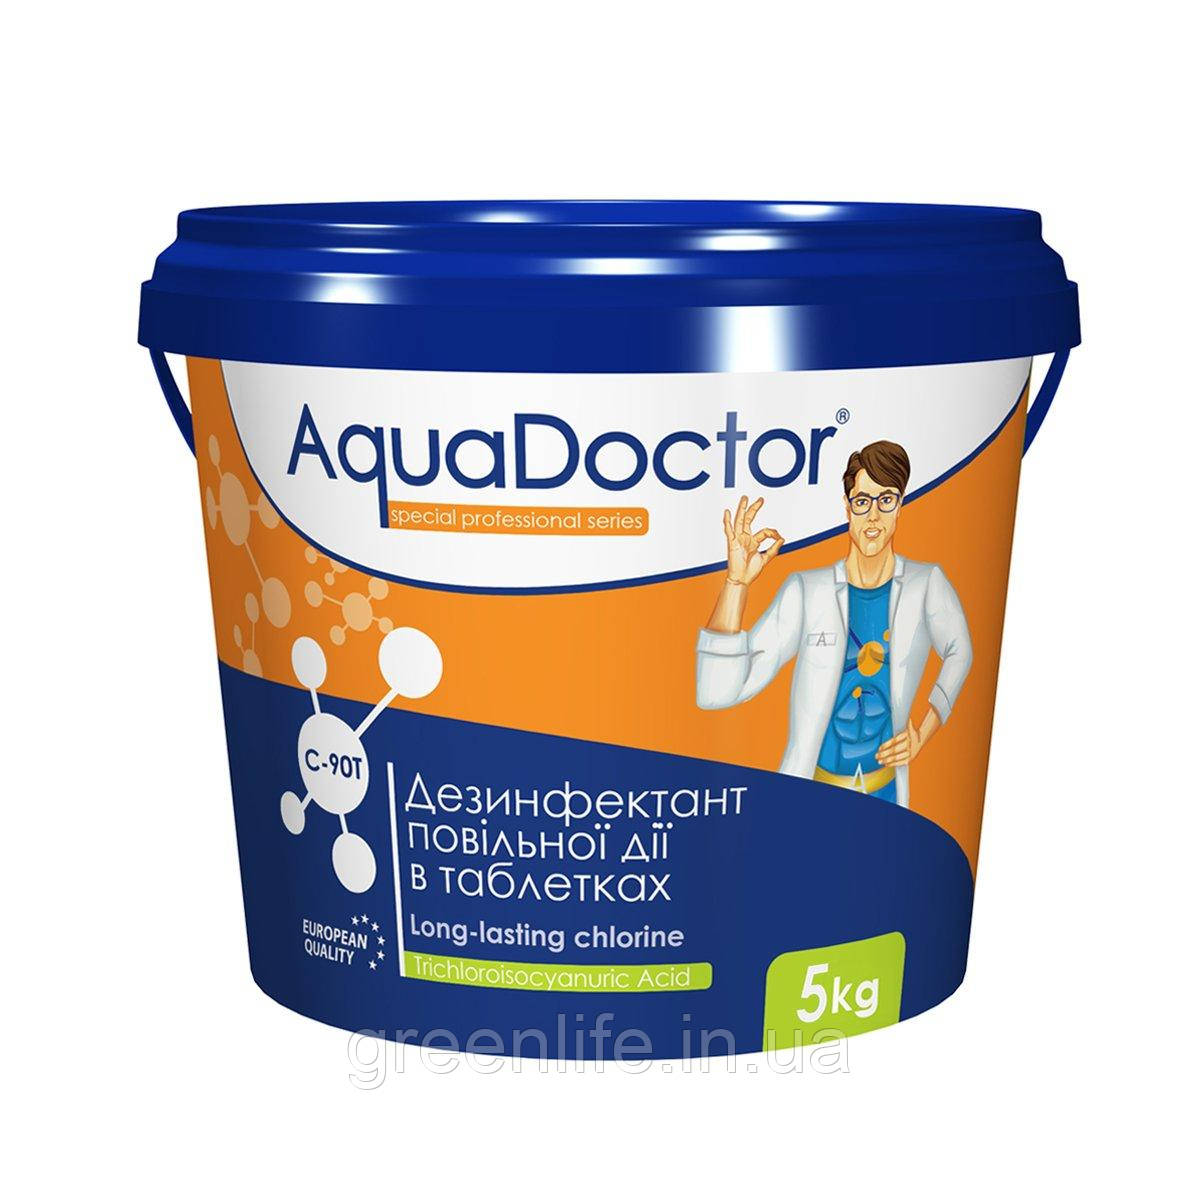 Тривалий хлор в таблетках Aquadoctor C90T (5 кг), Аквадоктор, в таблетках, 5 кг